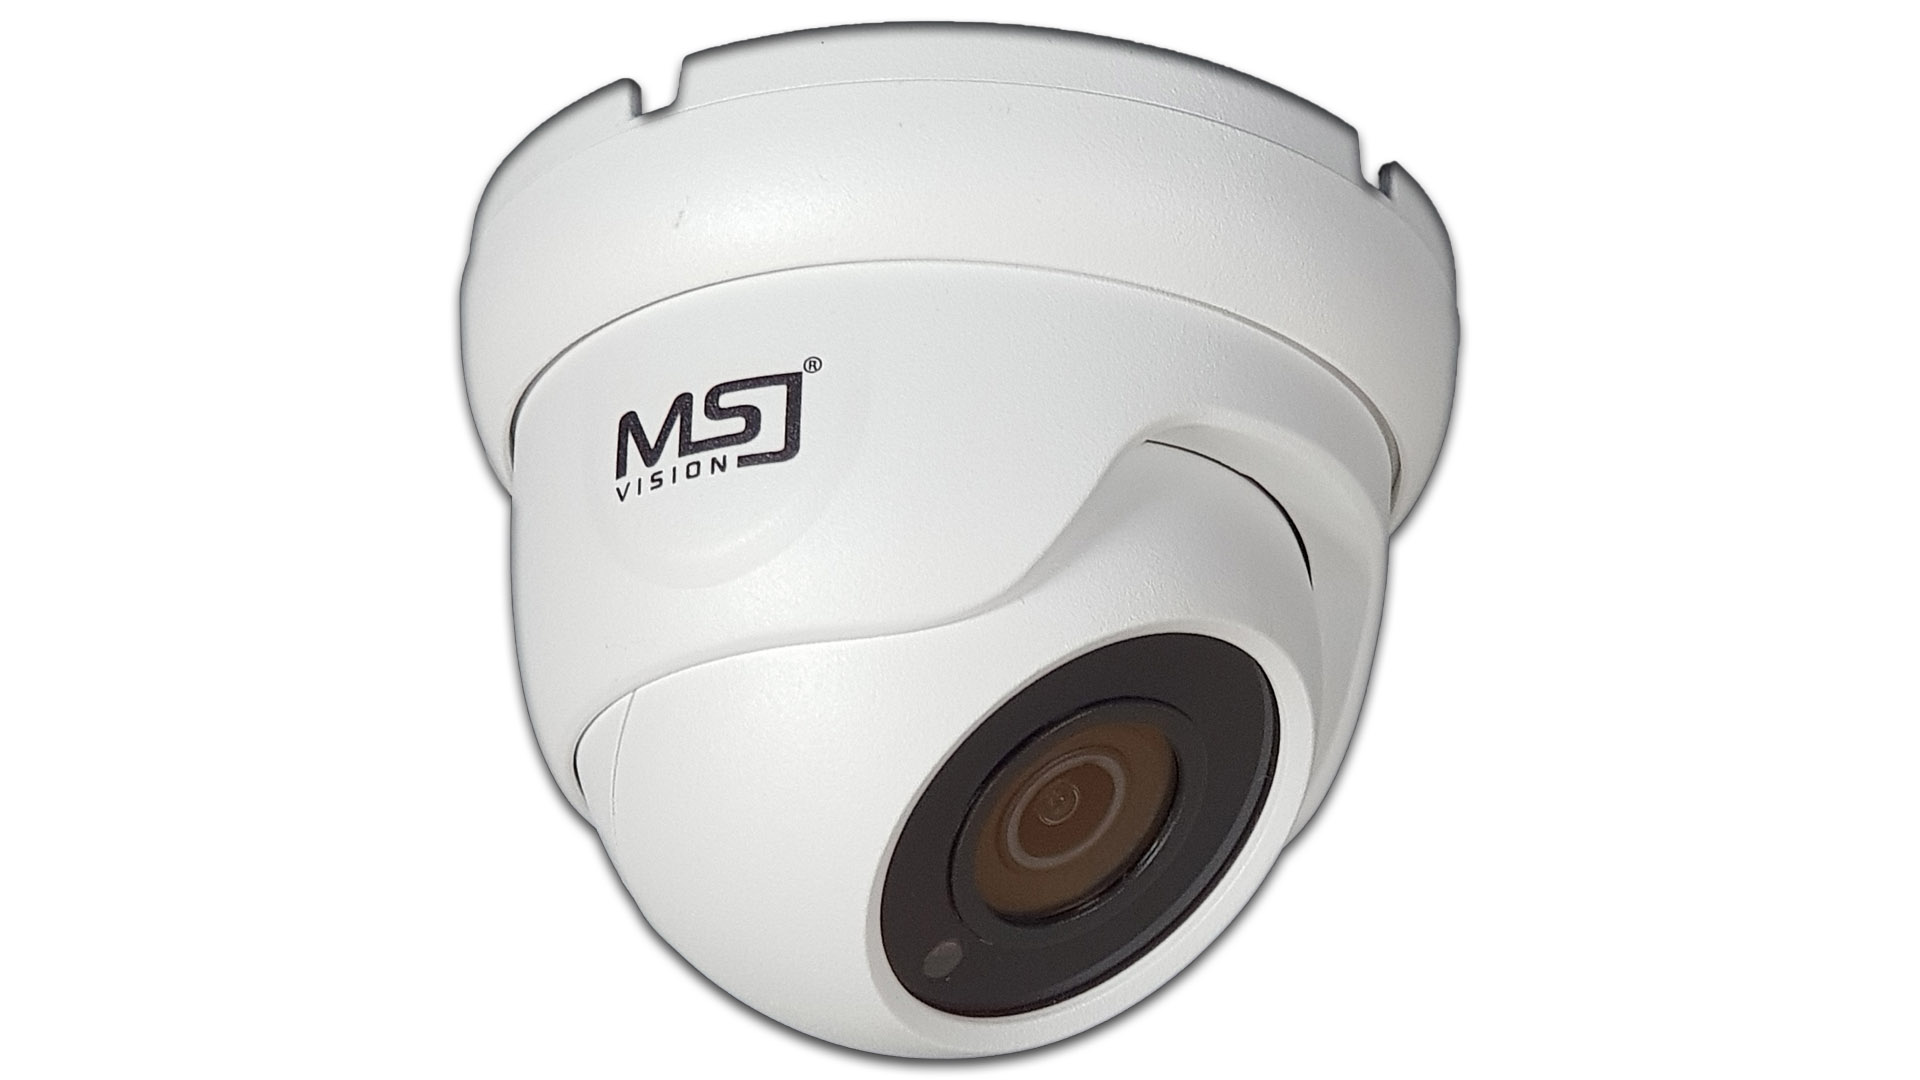 Zestaw do monitoringu MSJ 4 kamery 5Mpx, rejestrator, dysk twardy, akcesoria